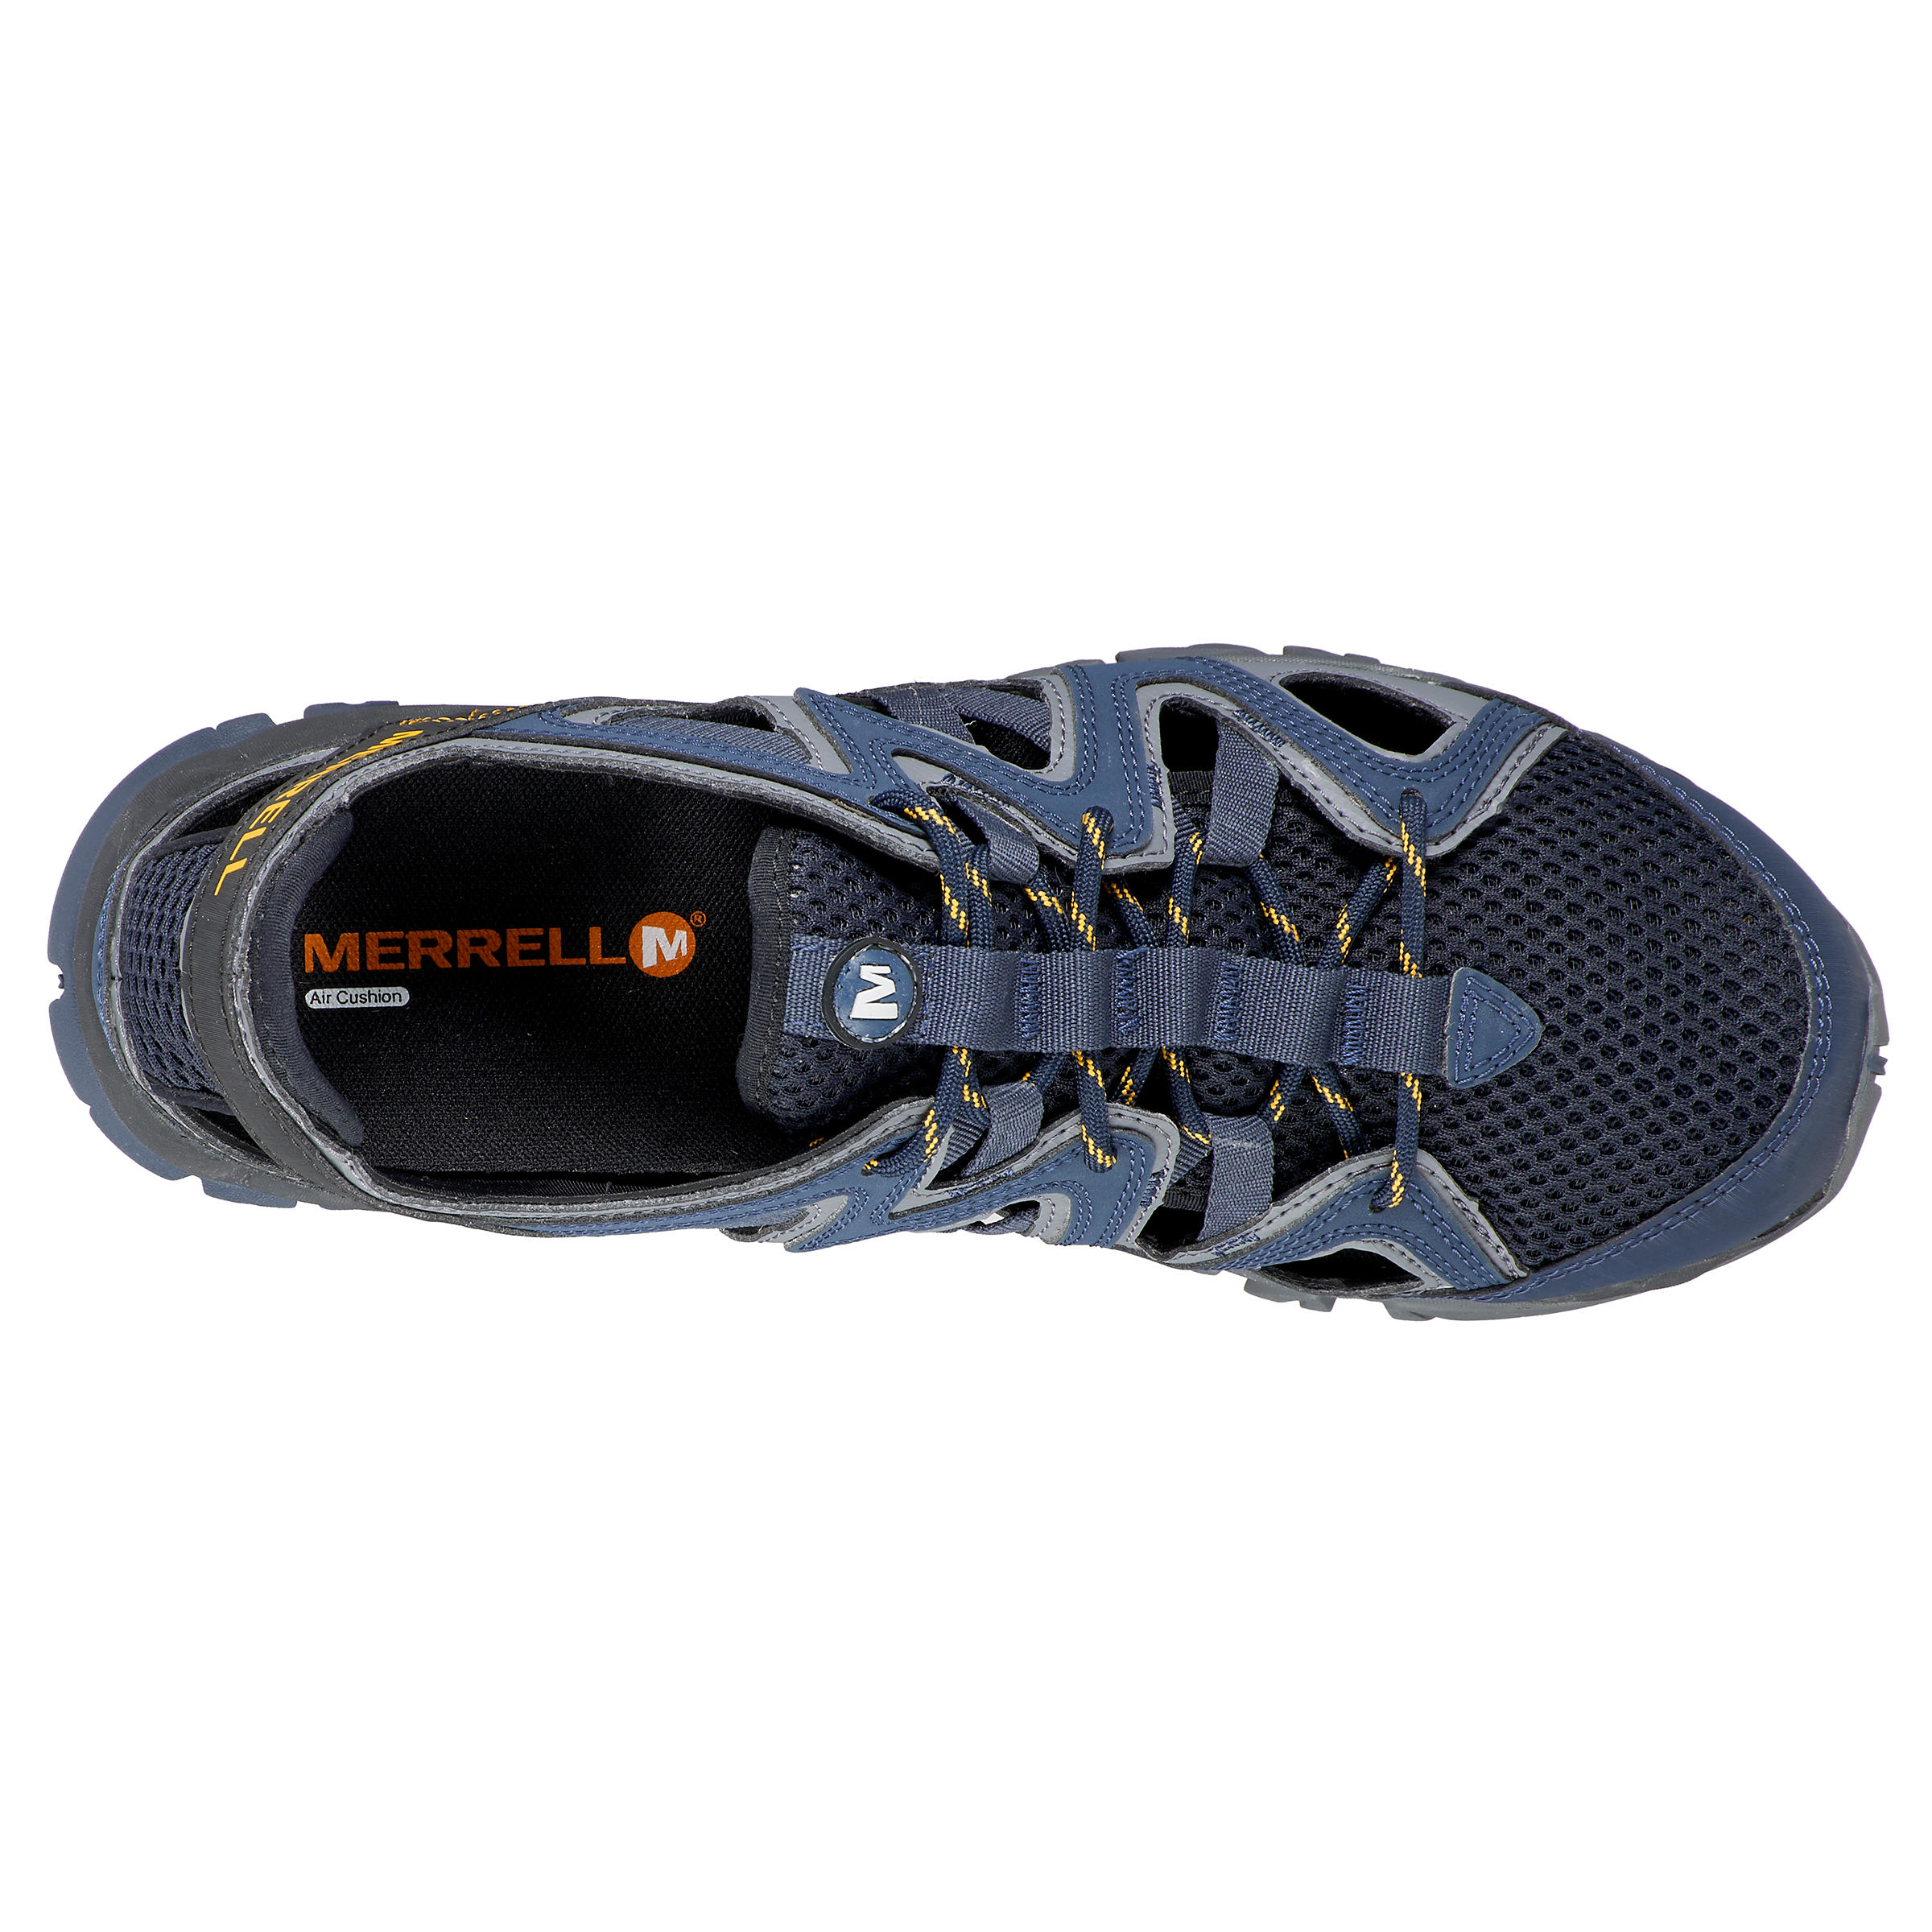 Men's walking sandals - Merrell Tetrex Crest - Blue 4/5